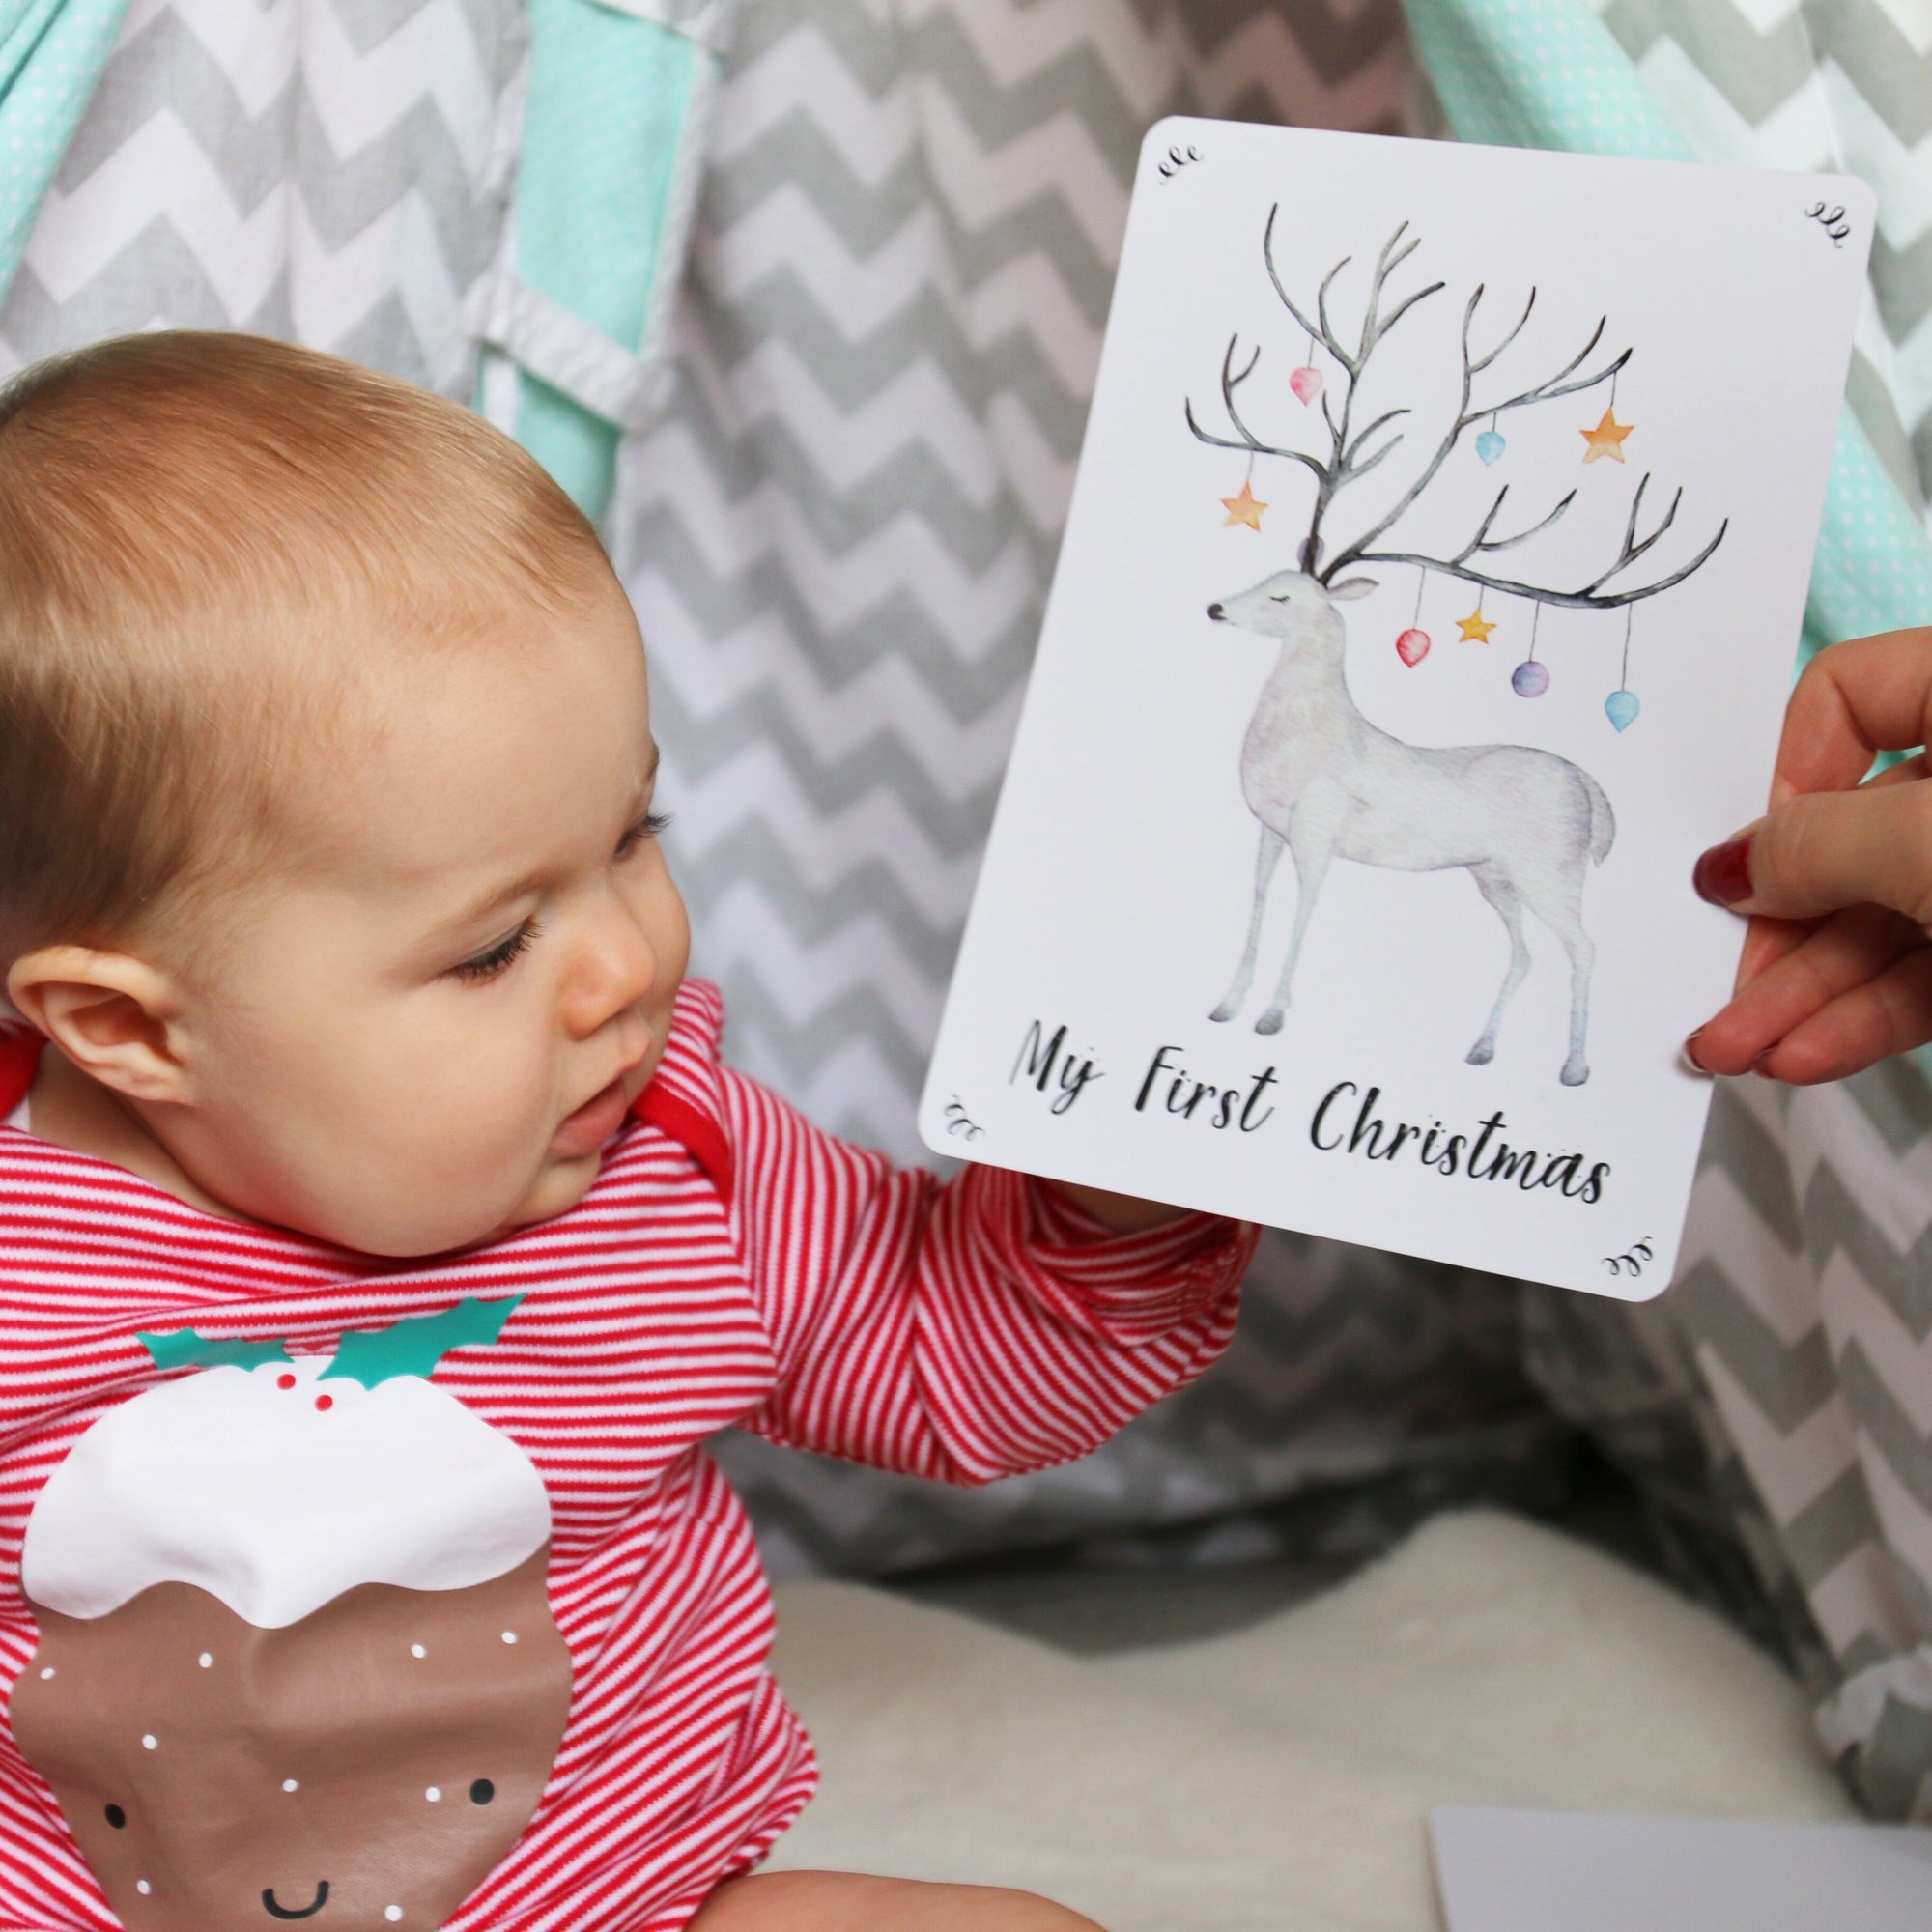 Cute baby looking at a reindeer print